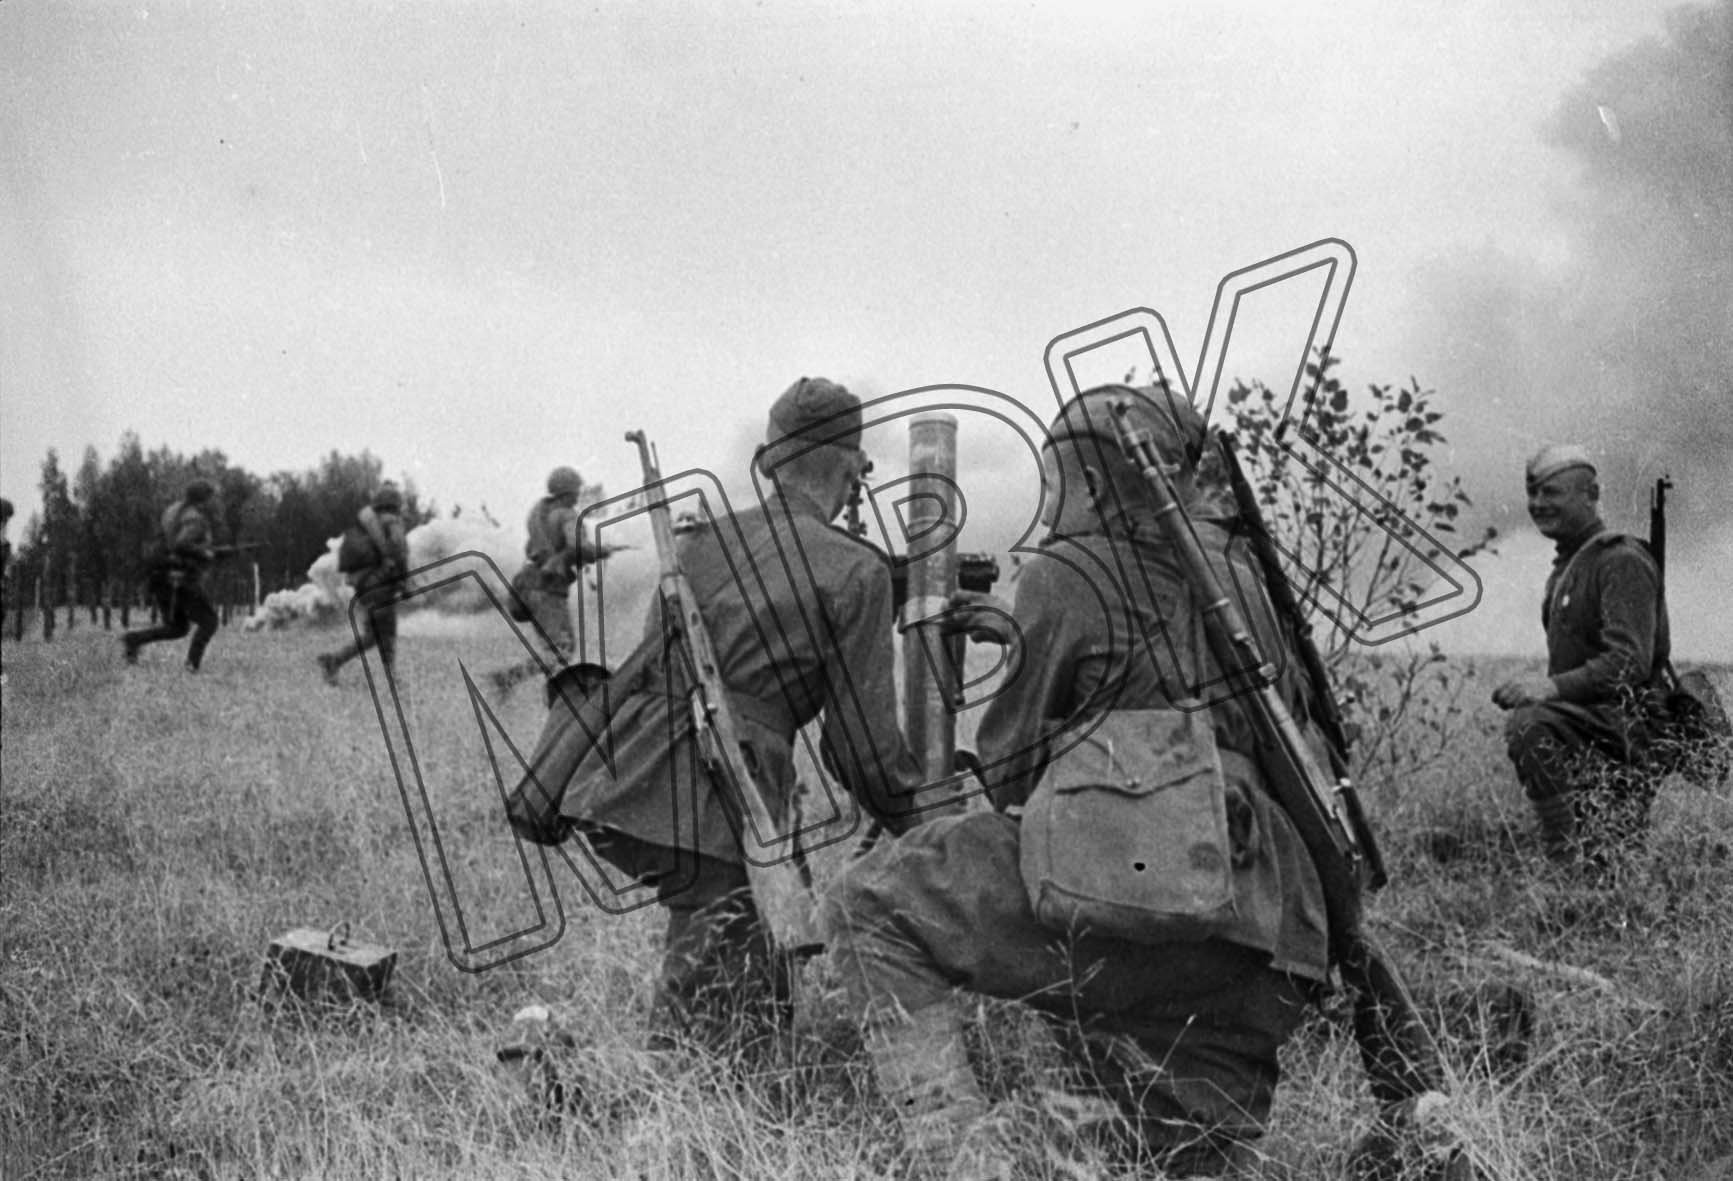 Fotografie: Angriff sowjetischer Truppen, 3. Belorussische Front, Juli 1944 (Museum Berlin-Karlshorst RR-P)